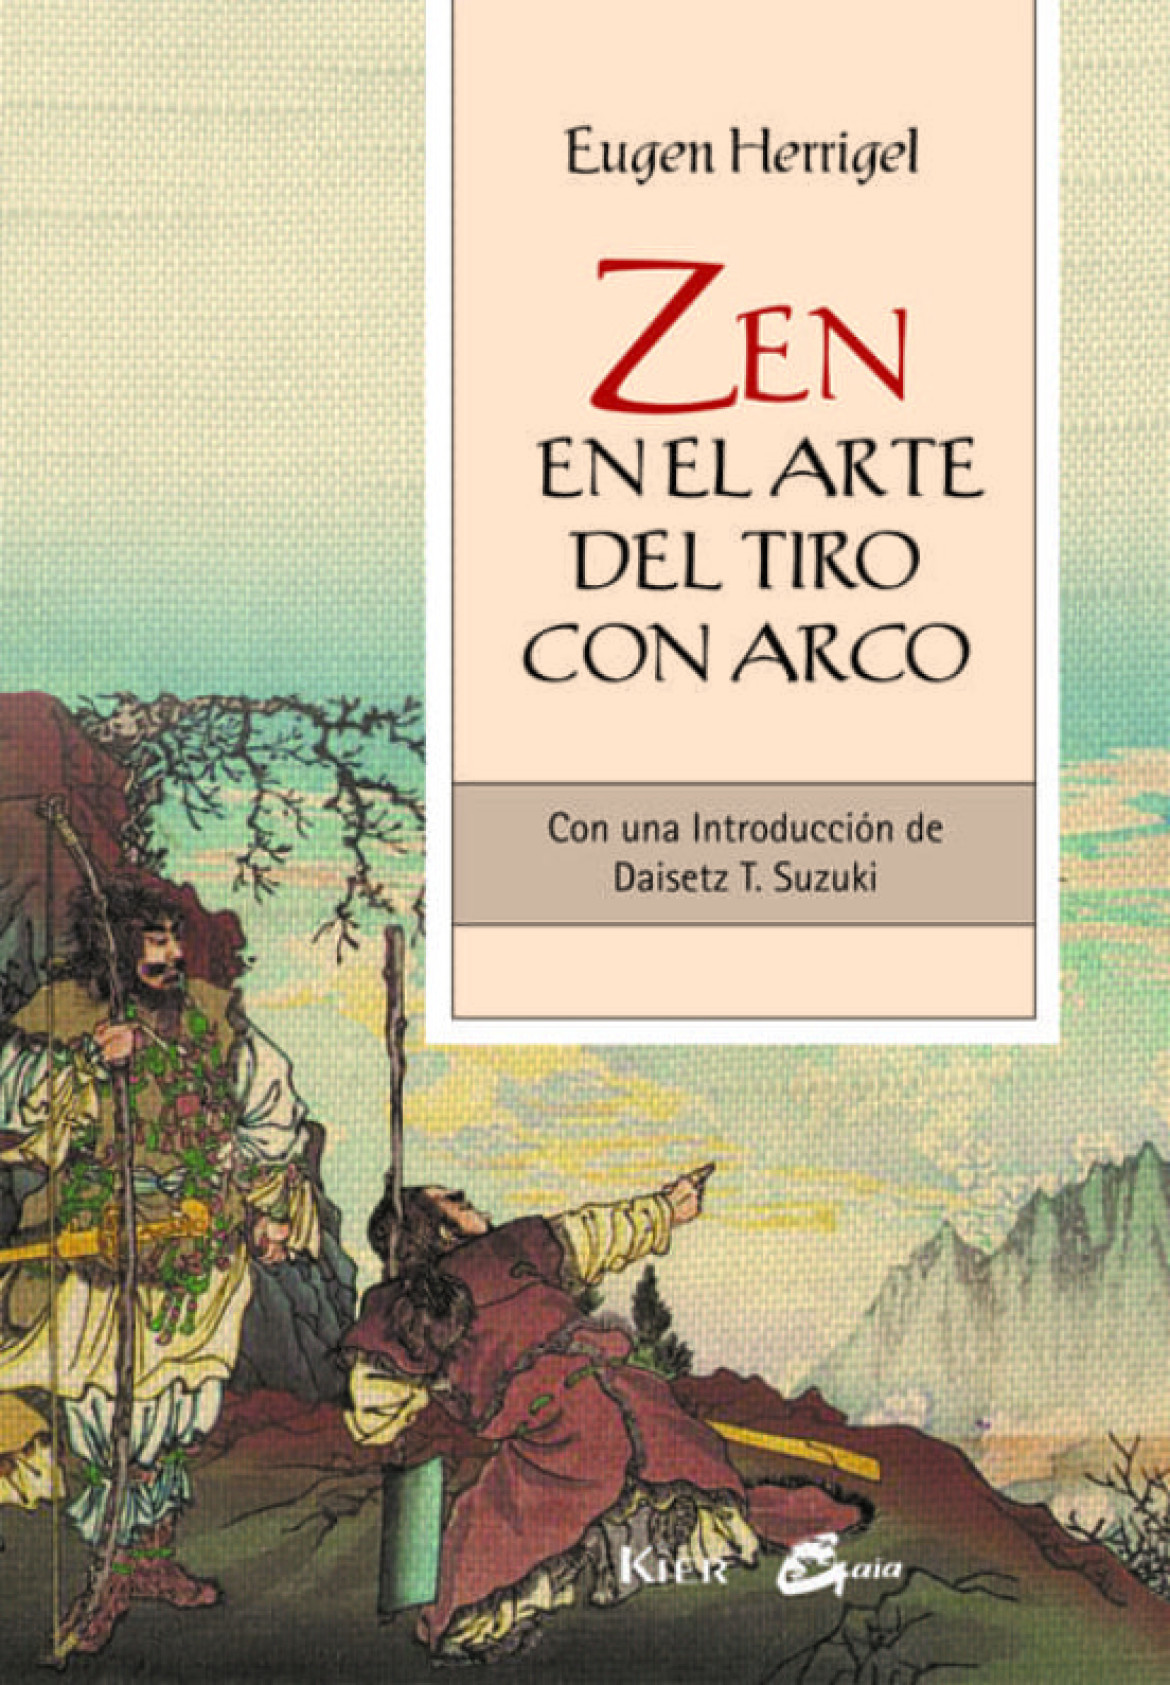 “Zen en el arte del tiro con arco”, de Eugen Herrige. Foto: Casa del Libro